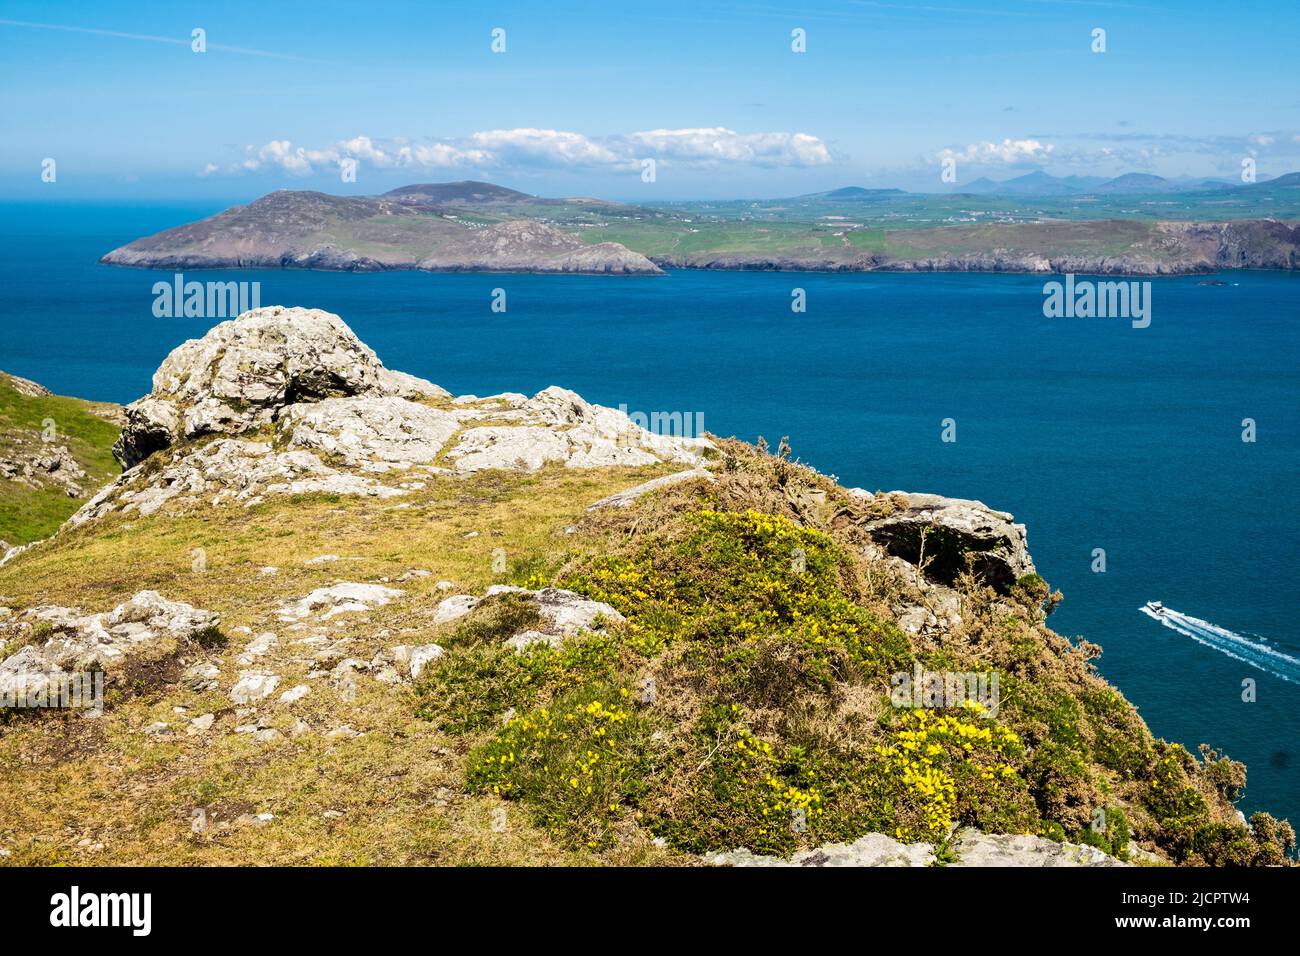 Vista sul mare blu e calmo fino alla penisola di Llyn dalla montagna di Mynydd Enlli su Ynys Enlli o Bardsey Island sulla costa occidentale gallese. Gwynedd, Galles settentrionale, Regno Unito Foto Stock